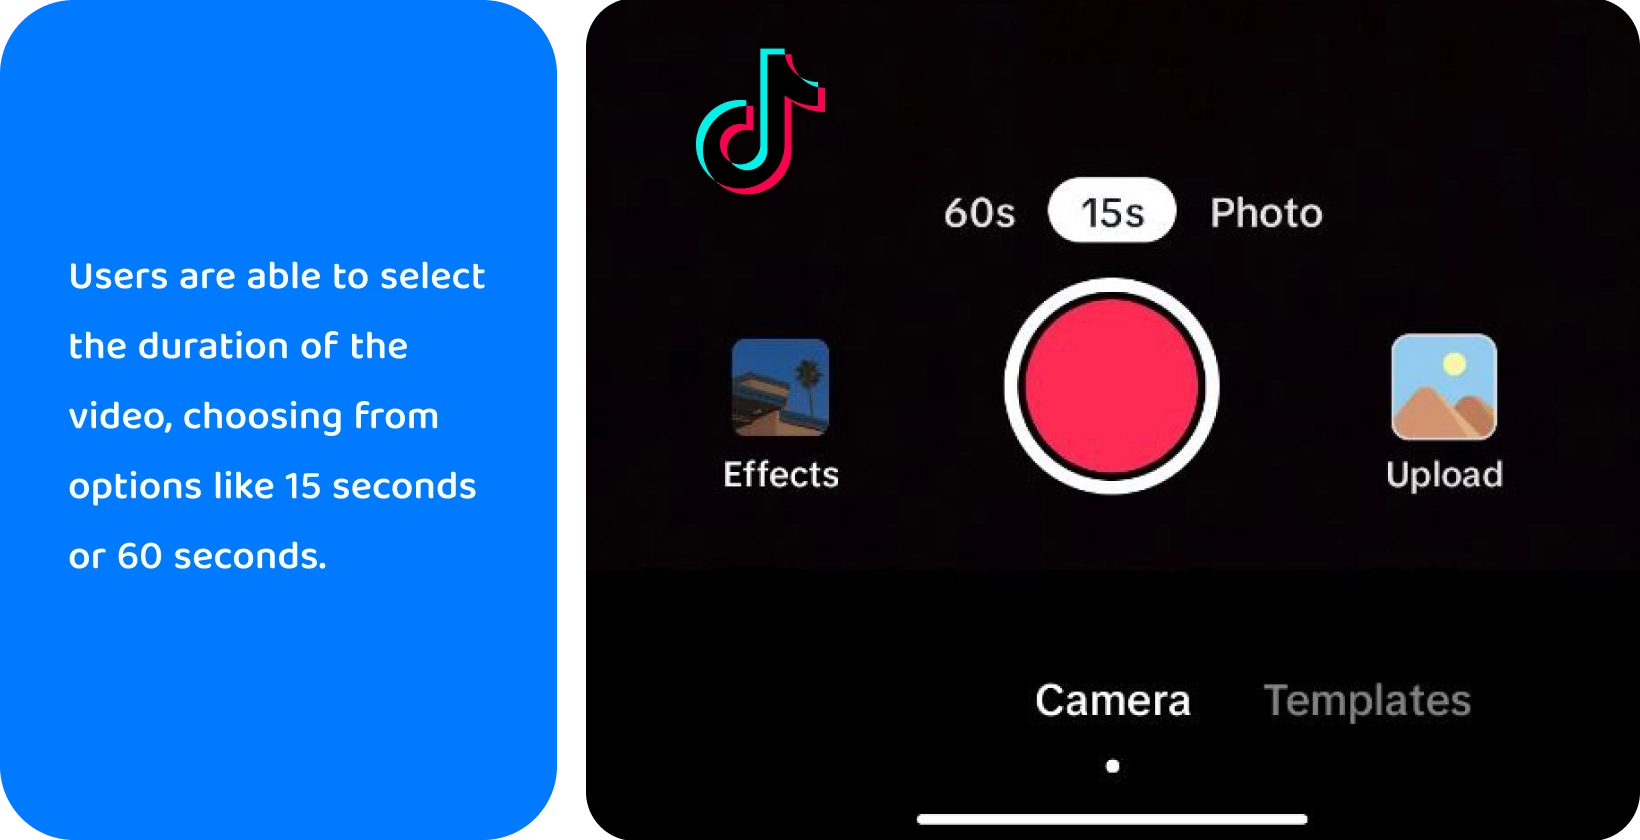 Interfejs nagrywania TikTok z opcjami dodawania dźwięku, odwracania kamery, stosowania filtrów, używania timera i innych do kreatywnego tworzenia wideo.
